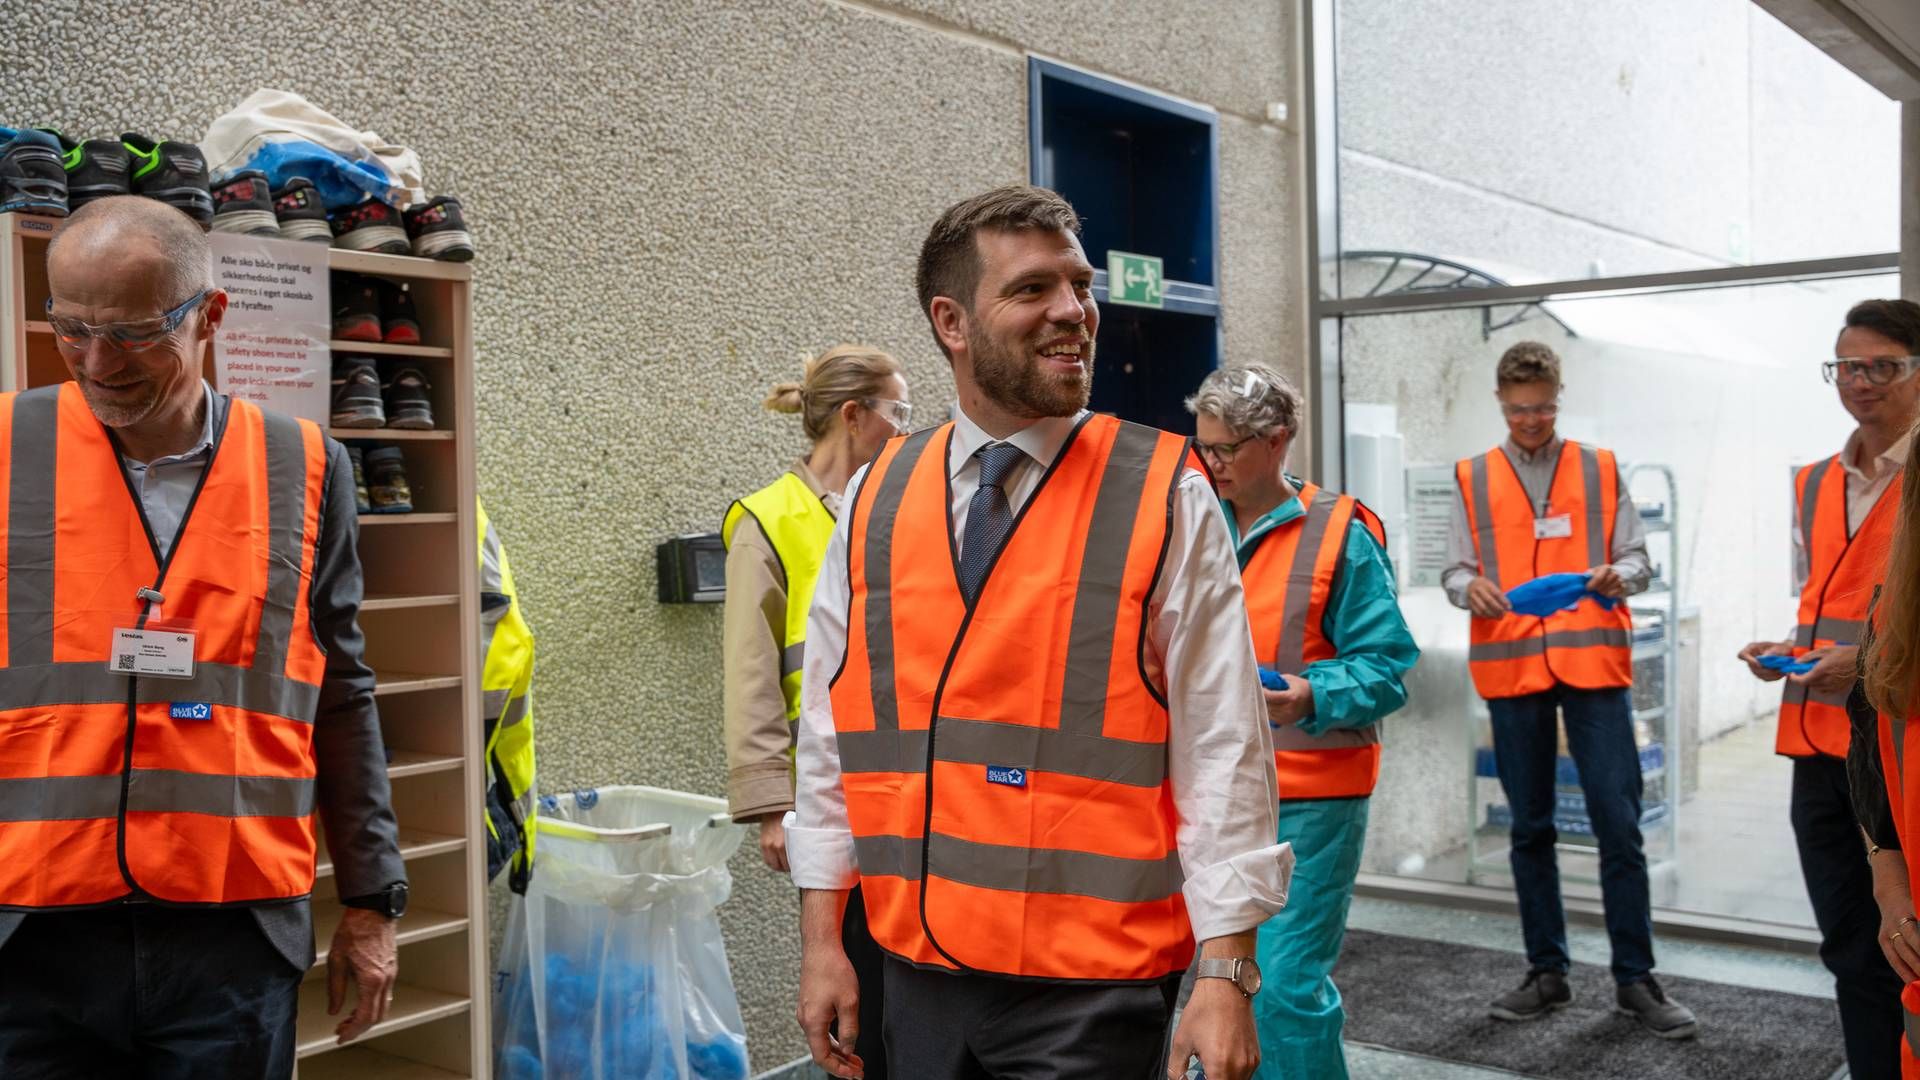 Venstres minister for byer og landdistrikter Morten Dahlin besøger Vestas’ fabrik i Nakskov. | Foto: Sarah Mølsted / Dansk Erhverv